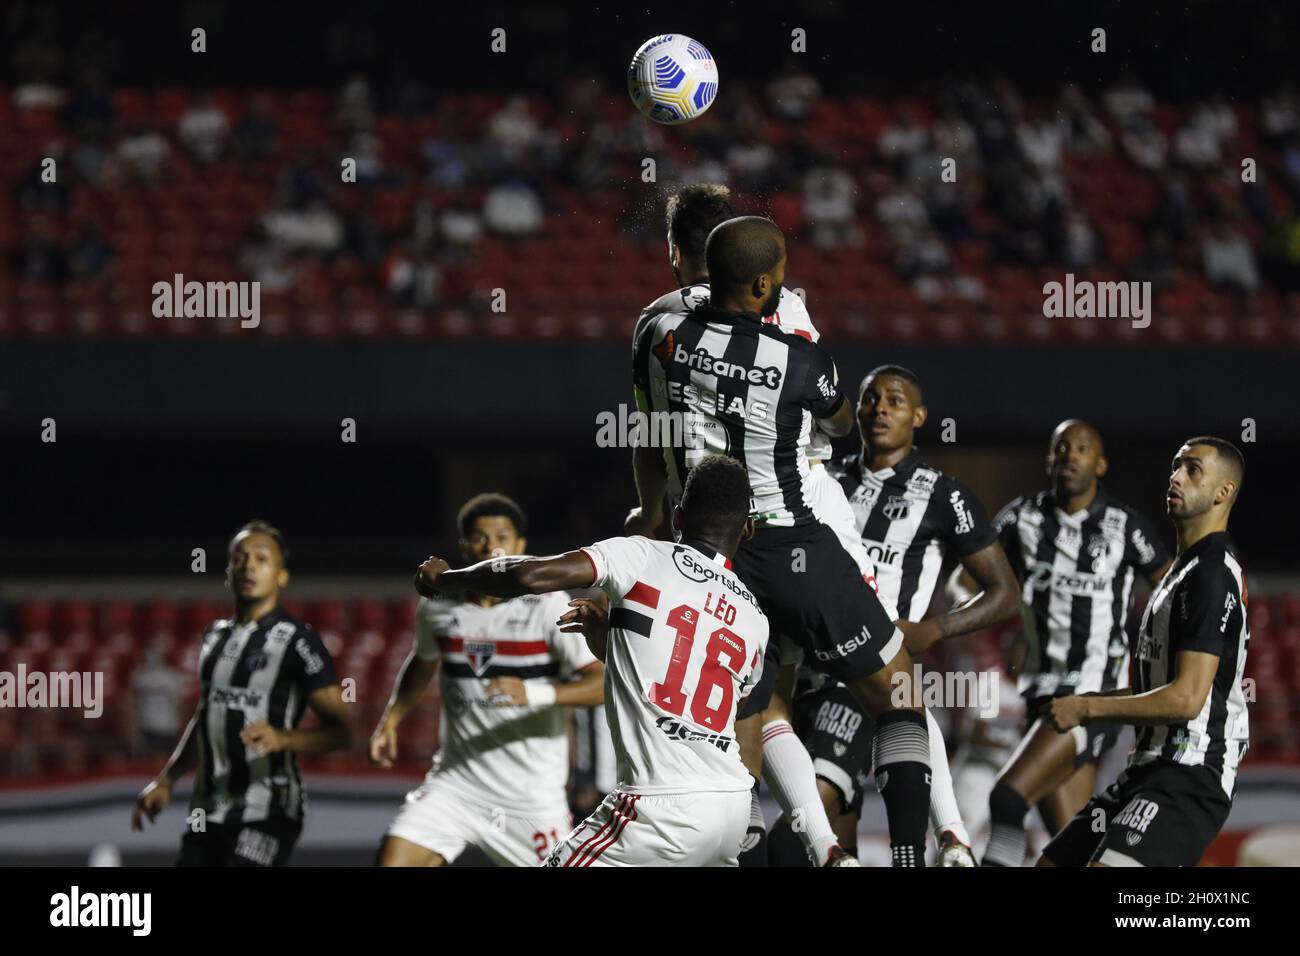 Action während des Fußballspiels Campeonato Brasileiro zwischen Sao Paulo und Ceara im Morumbi-Stadion in Sao Paulo, SP, Quelle: SPP Sport Press Foto. /Alamy Live News Stockfoto